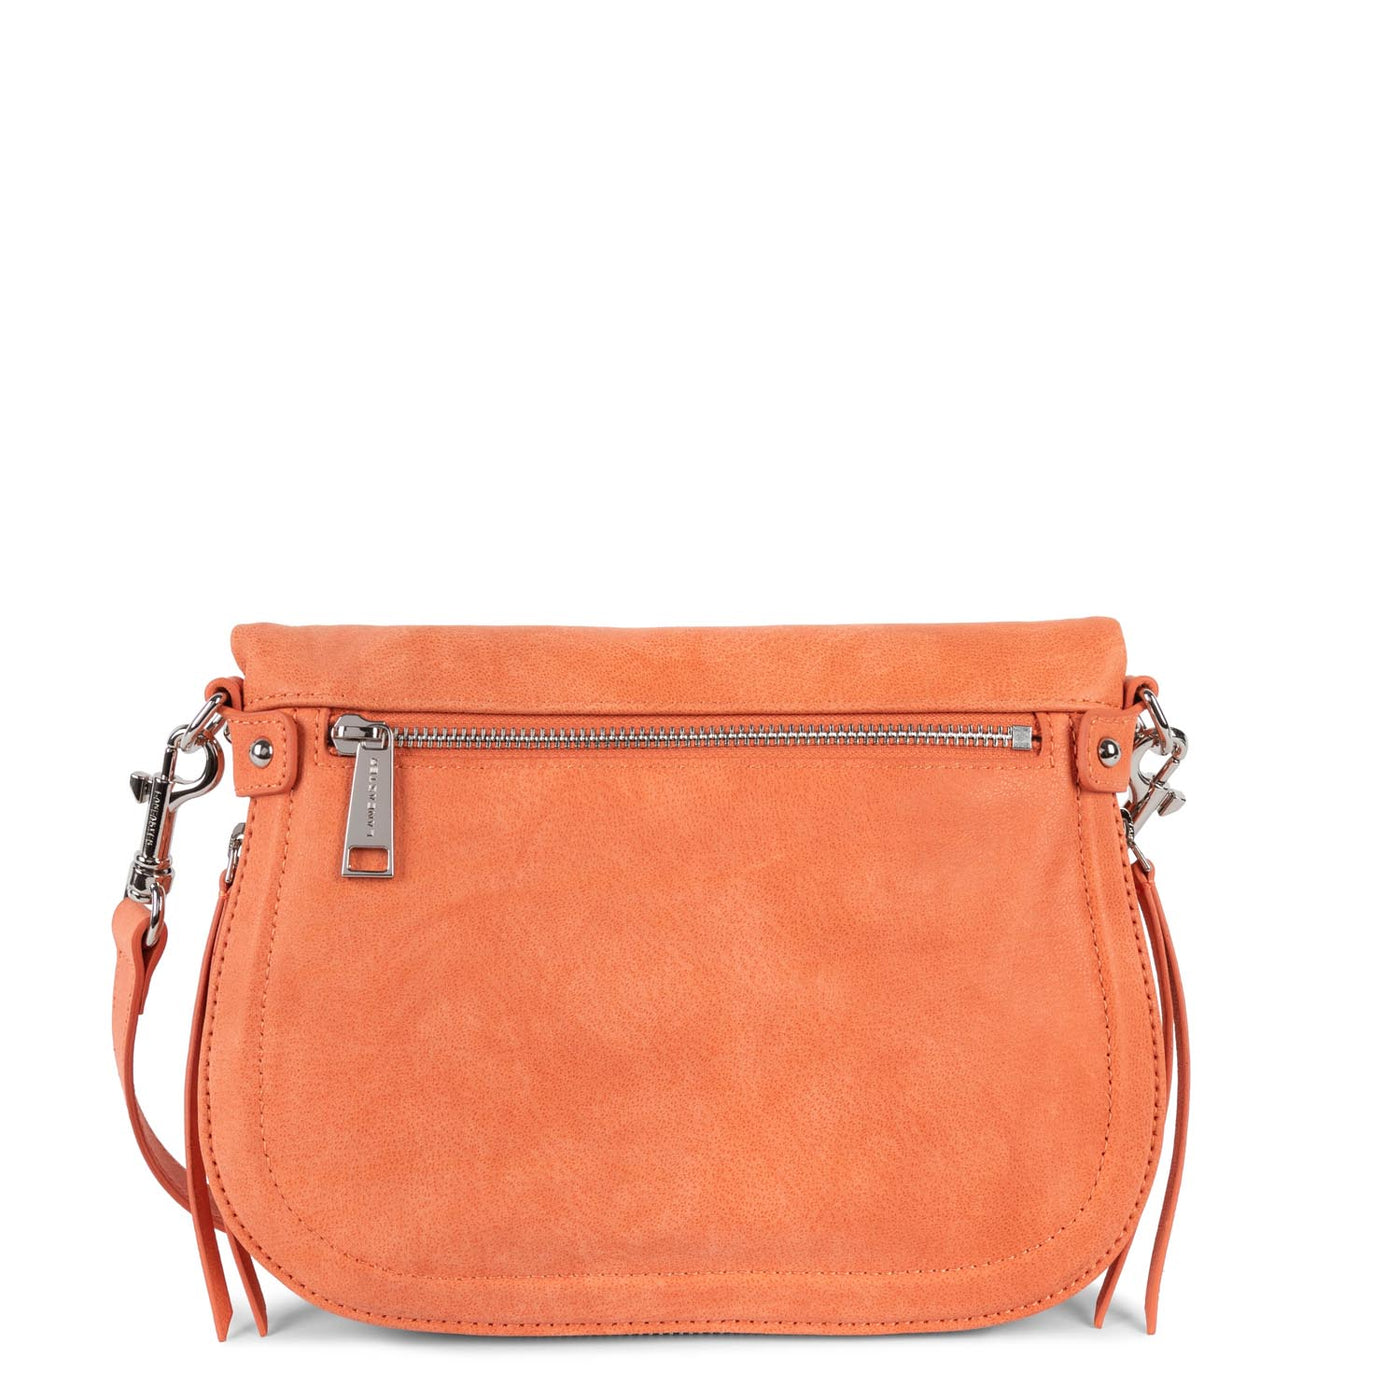 m shoulder bag - santa fe lisi #couleur_orange